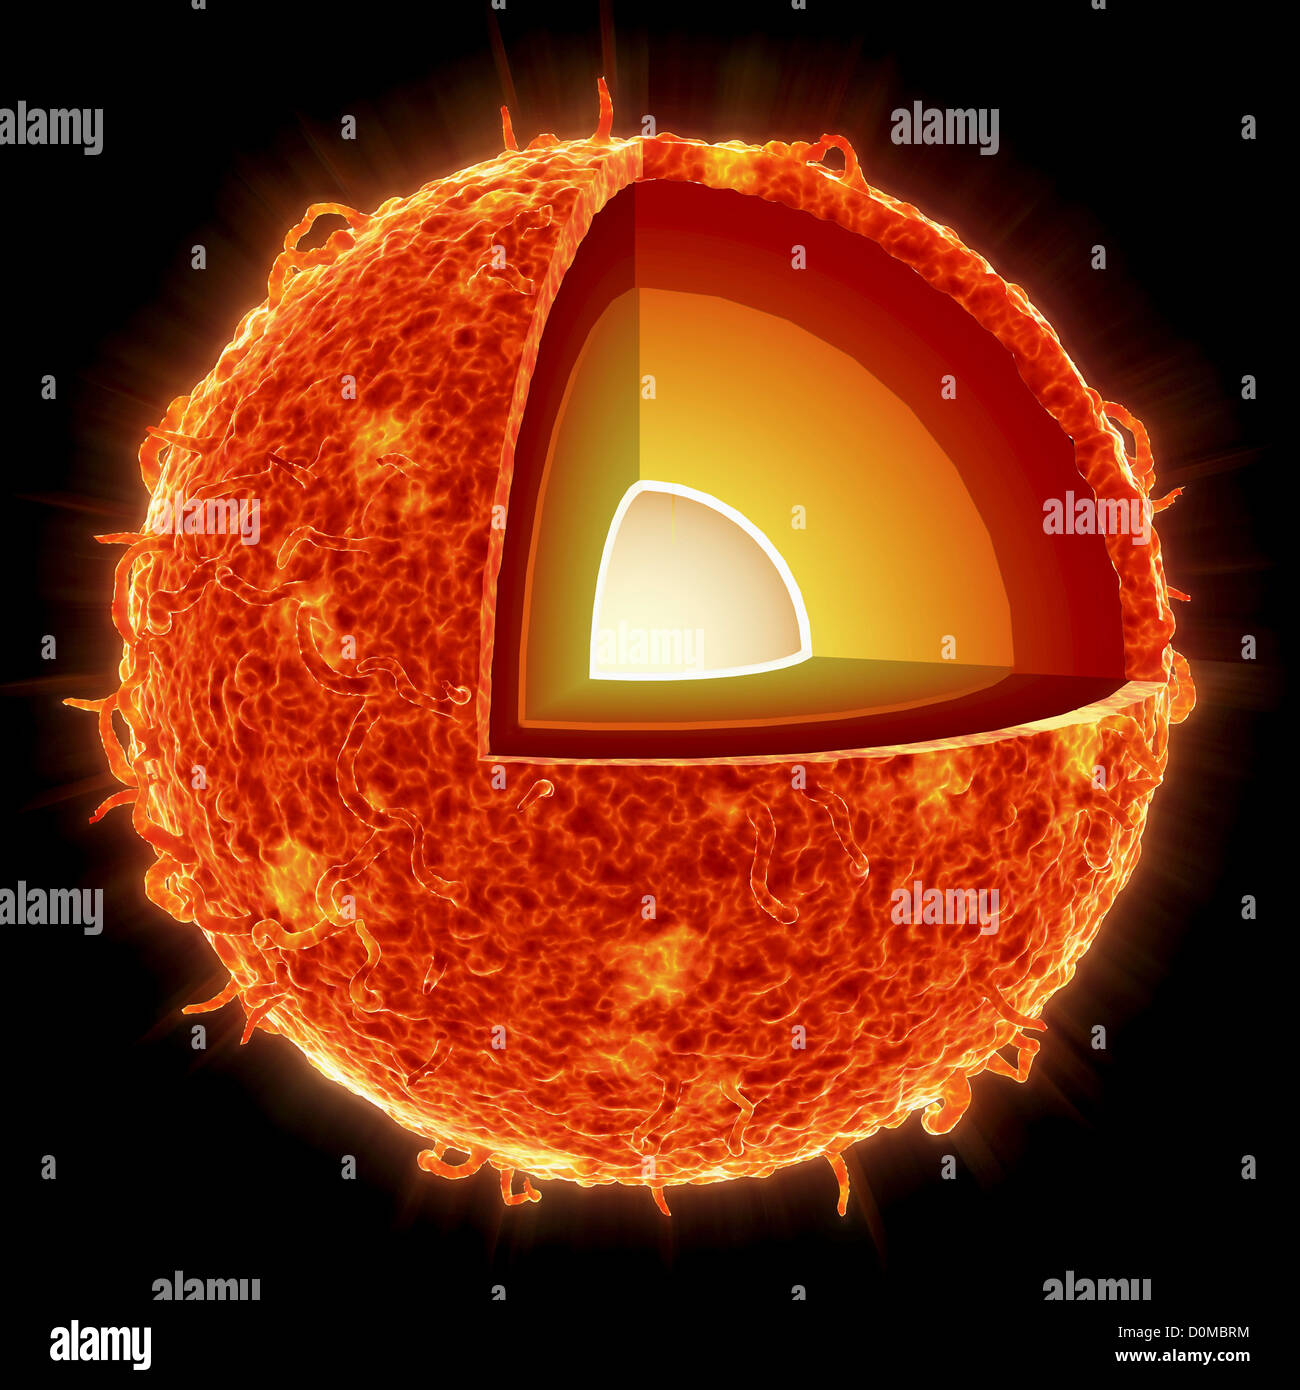 Querschnitt durch die Sonne zeigt den Kern, Strahlungs Zone und konvektiven Zone. Stockfoto